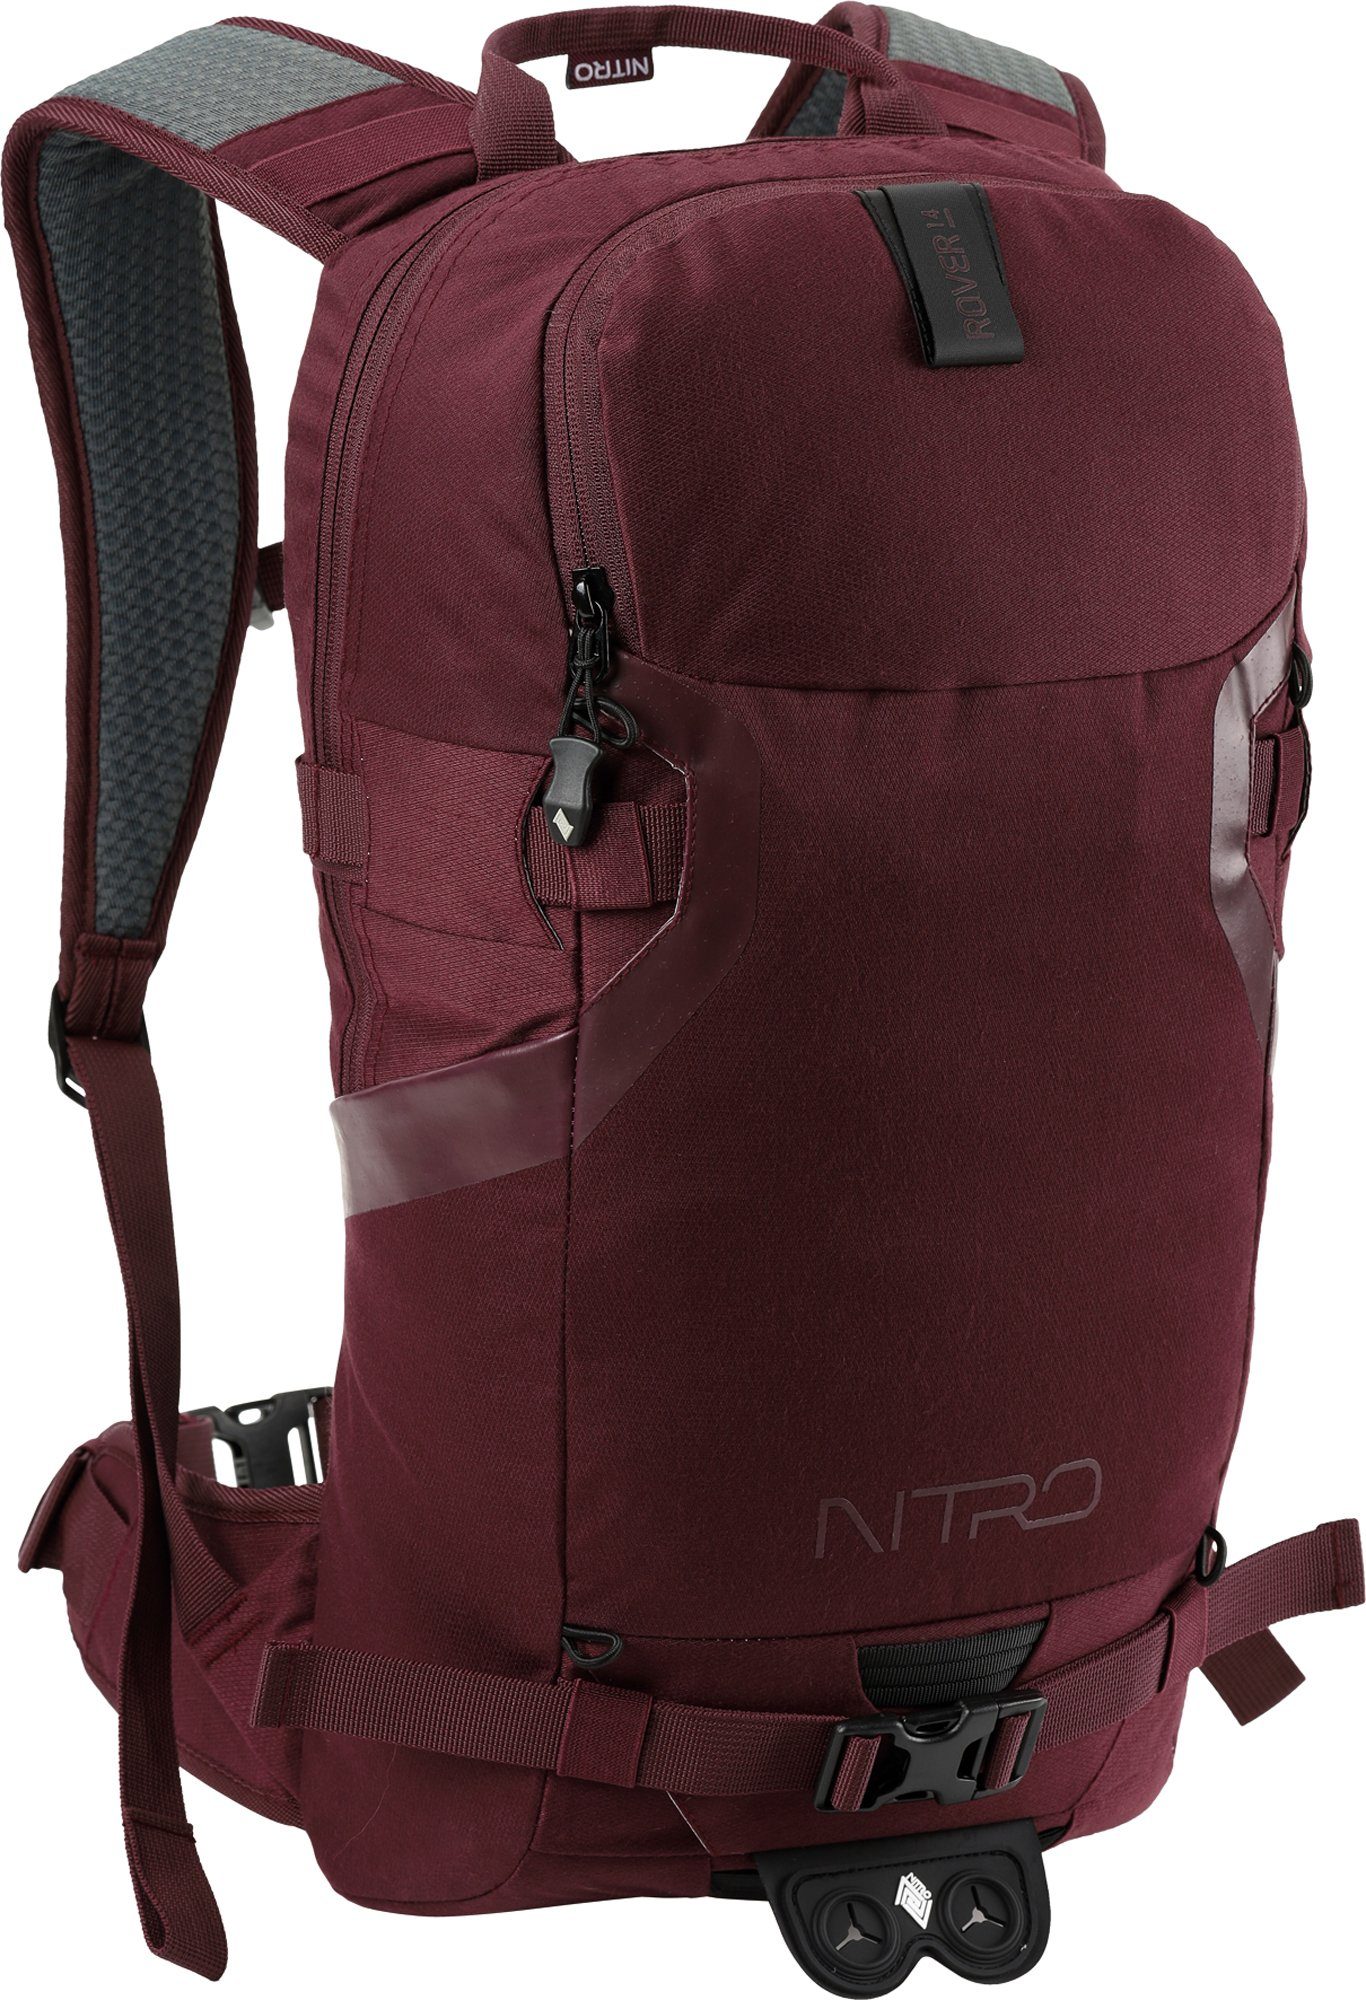 14, Trekkingrucksack für NITRO Wine, speziell Wintersport den konzipiert Rover